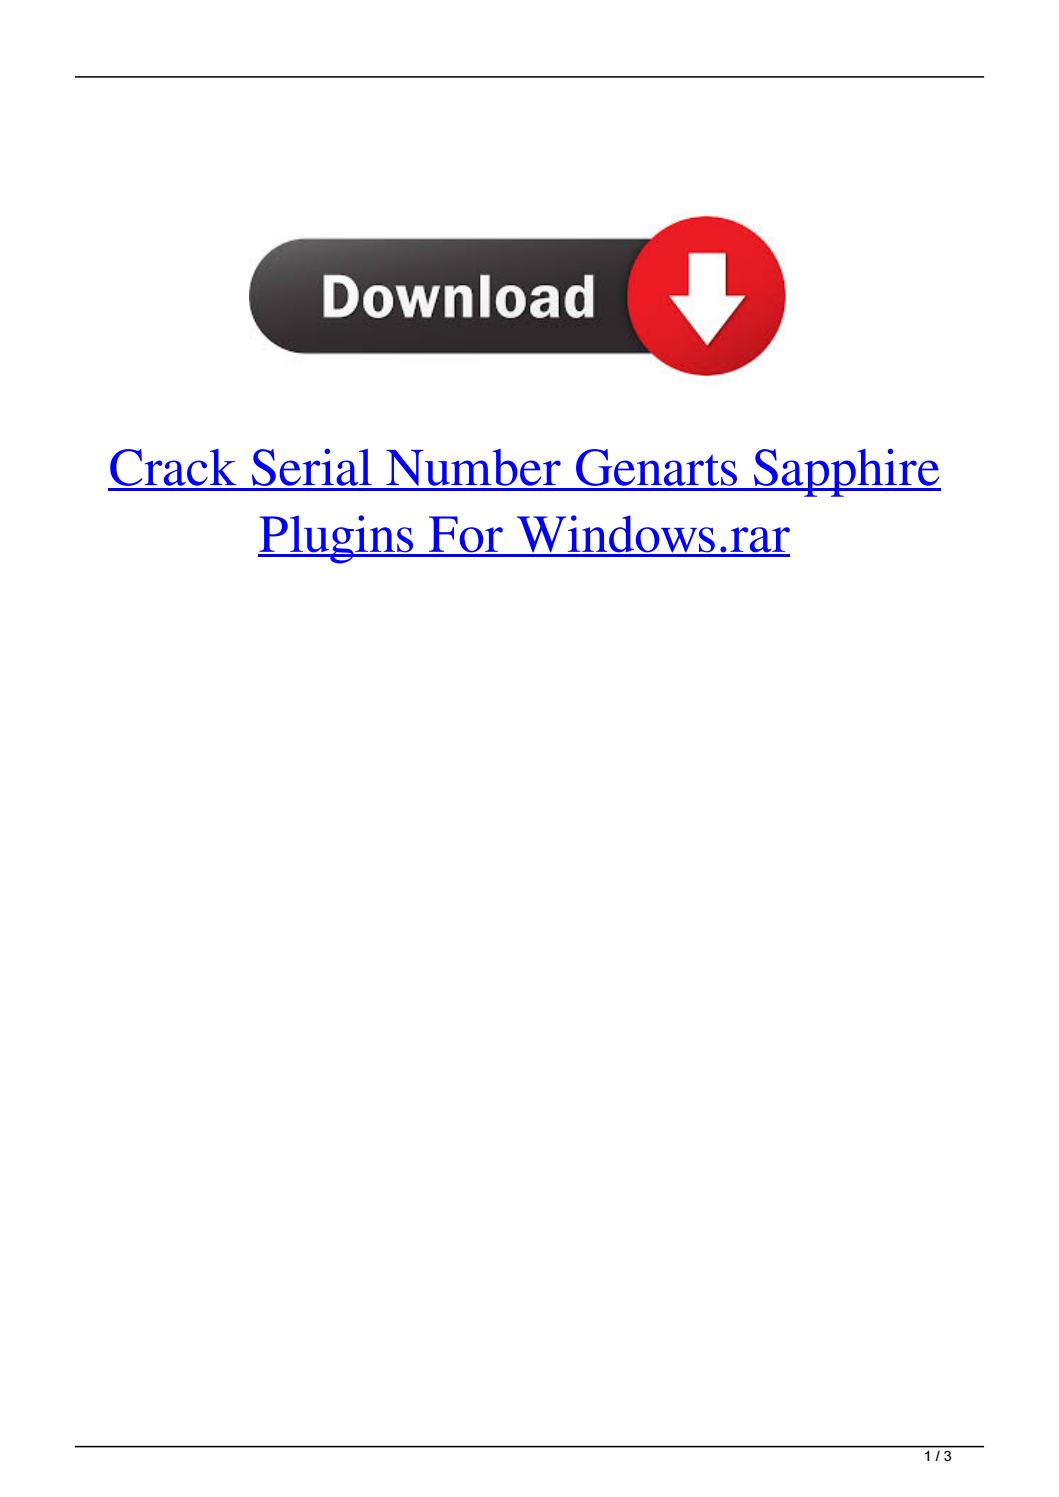 Crack serial number keygen